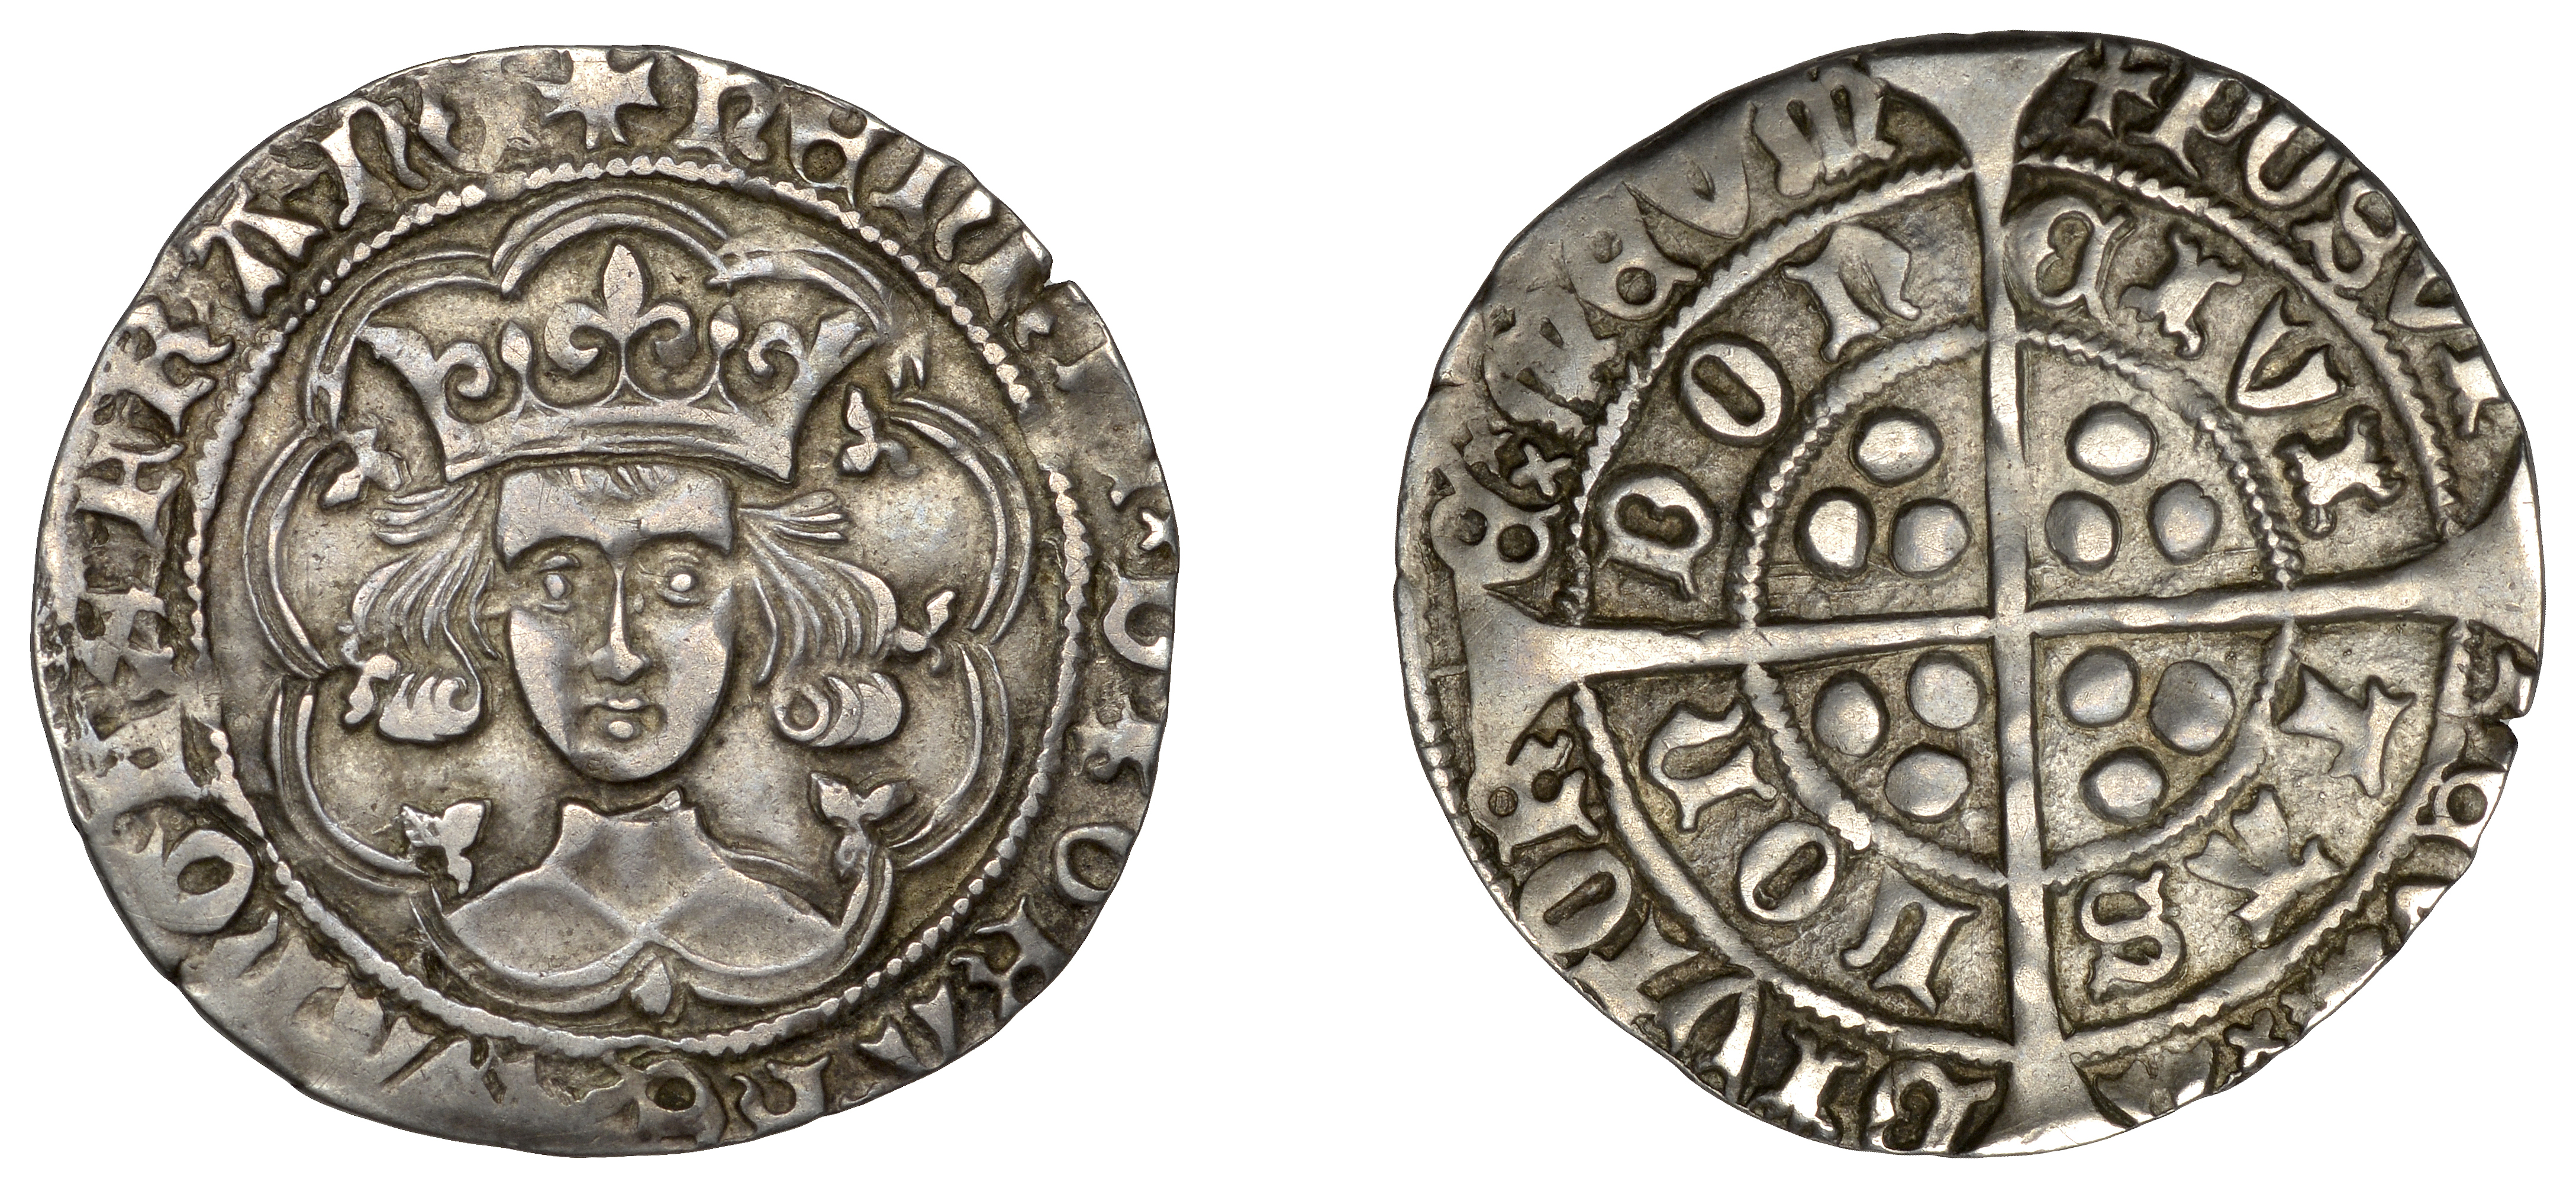 Henry VI (First reign, 1422-1461), Leaf-Mascle/Leaf-Trefoil mule, Groat, mm. crosses IV/V, l...